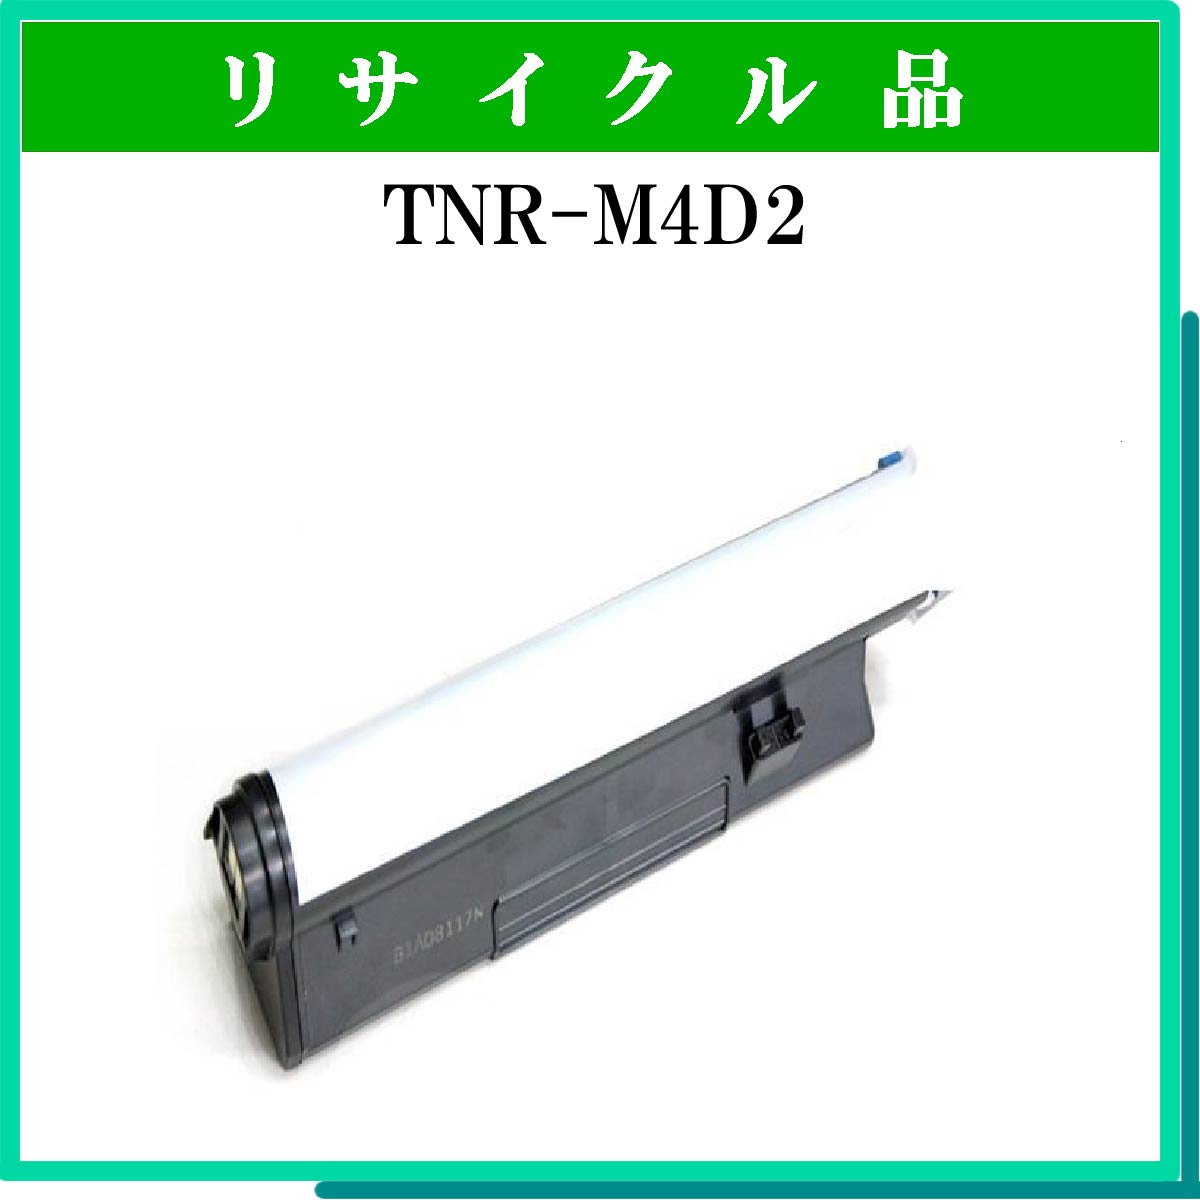 TNR-M4D2